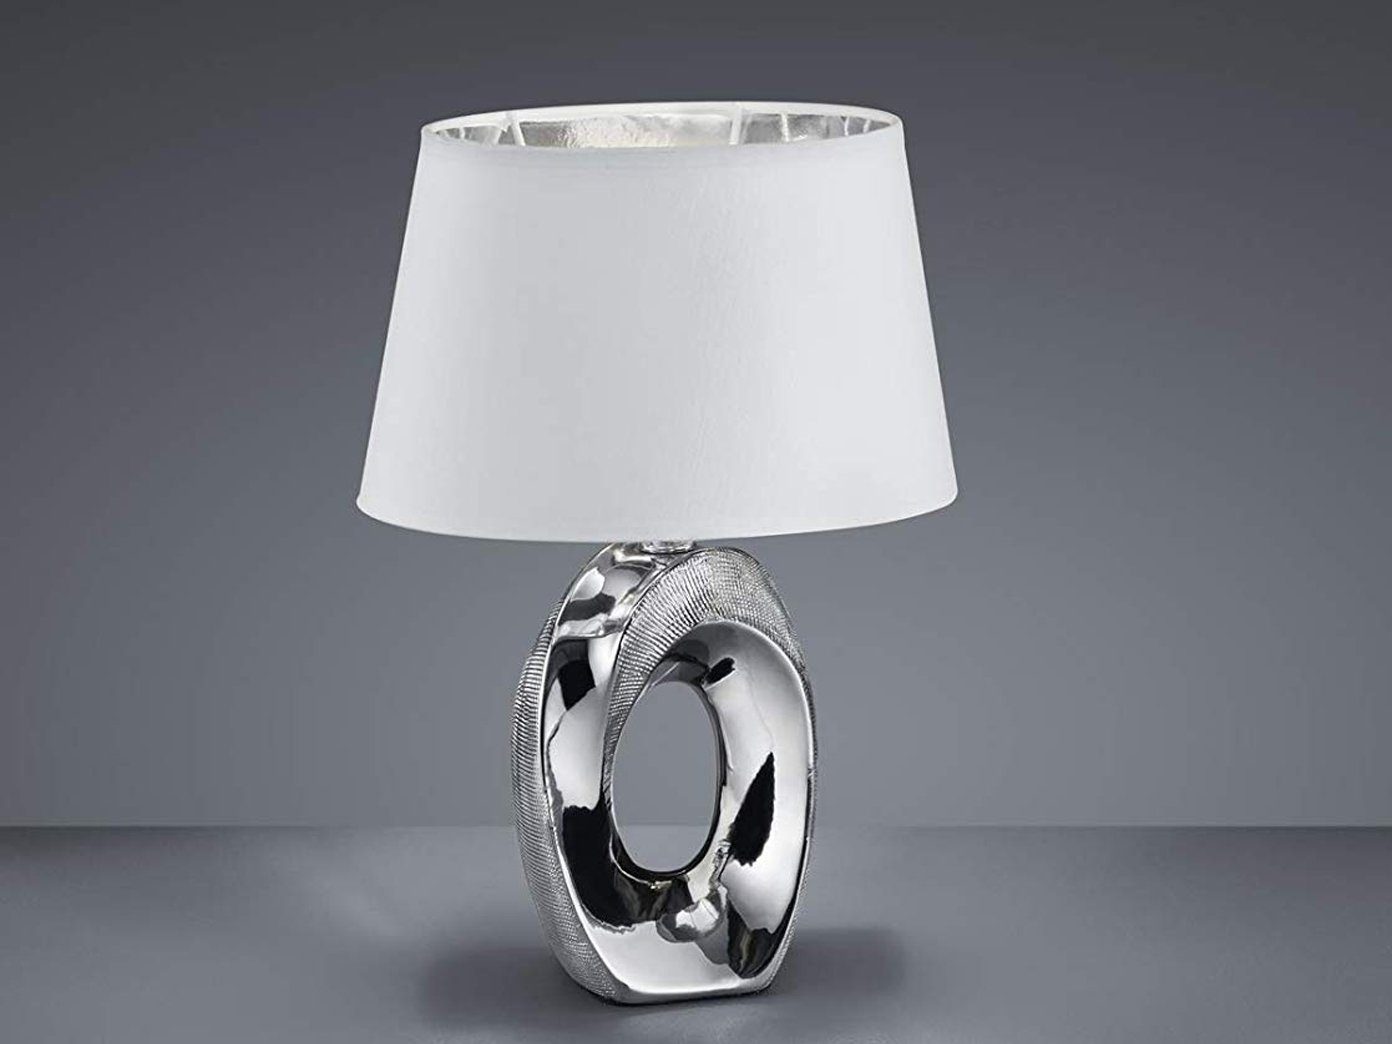 meineWunschleuchte LED Tischleuchte, LED wechselbar, Warmweiß, ausgefallen-e Design-er Lampe mit Stoff Lampenschirm Weiß Silber, 33cm Weiß-Silber